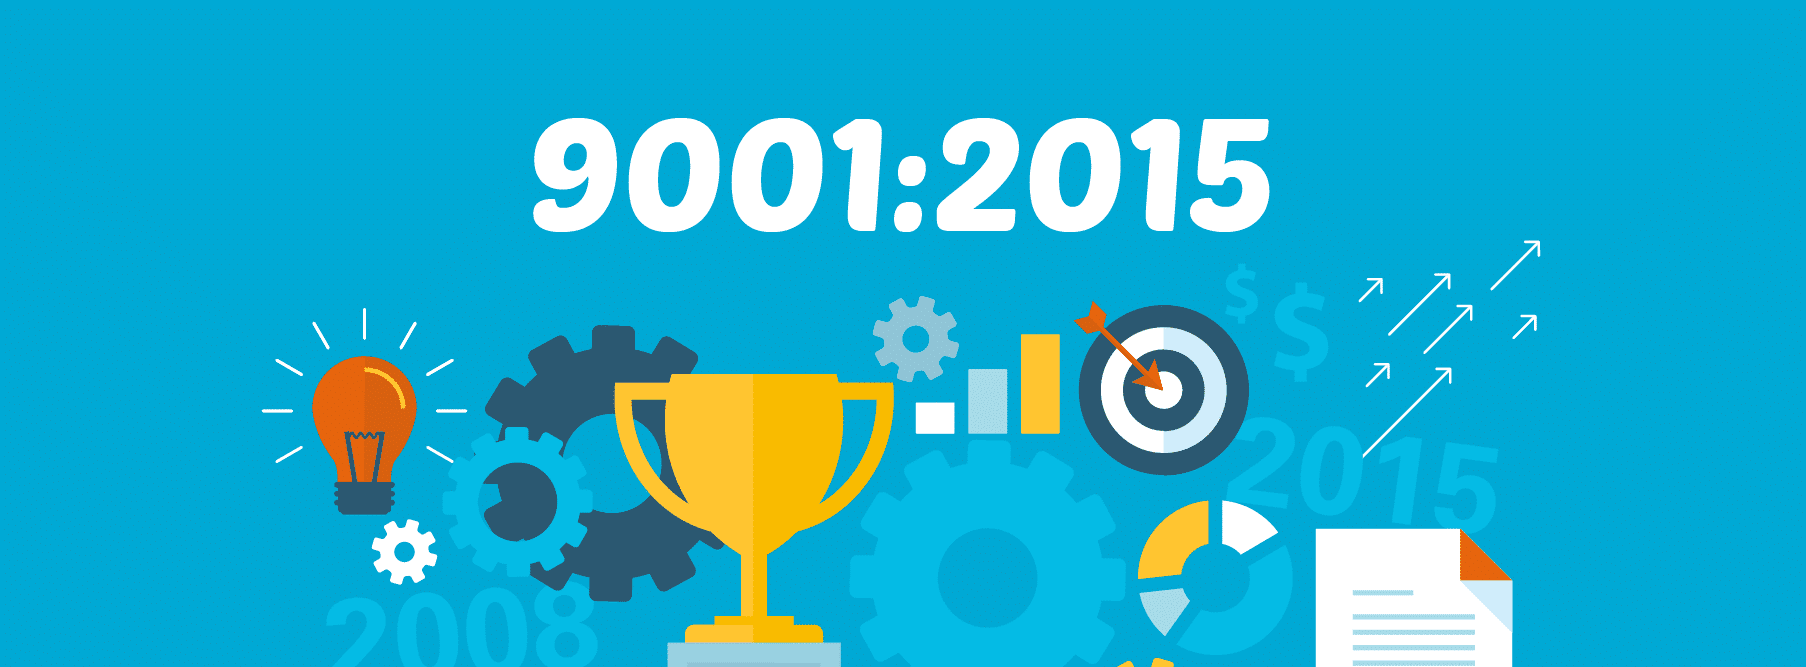 Nova versão ISO 9001 2015. Por onde começar?